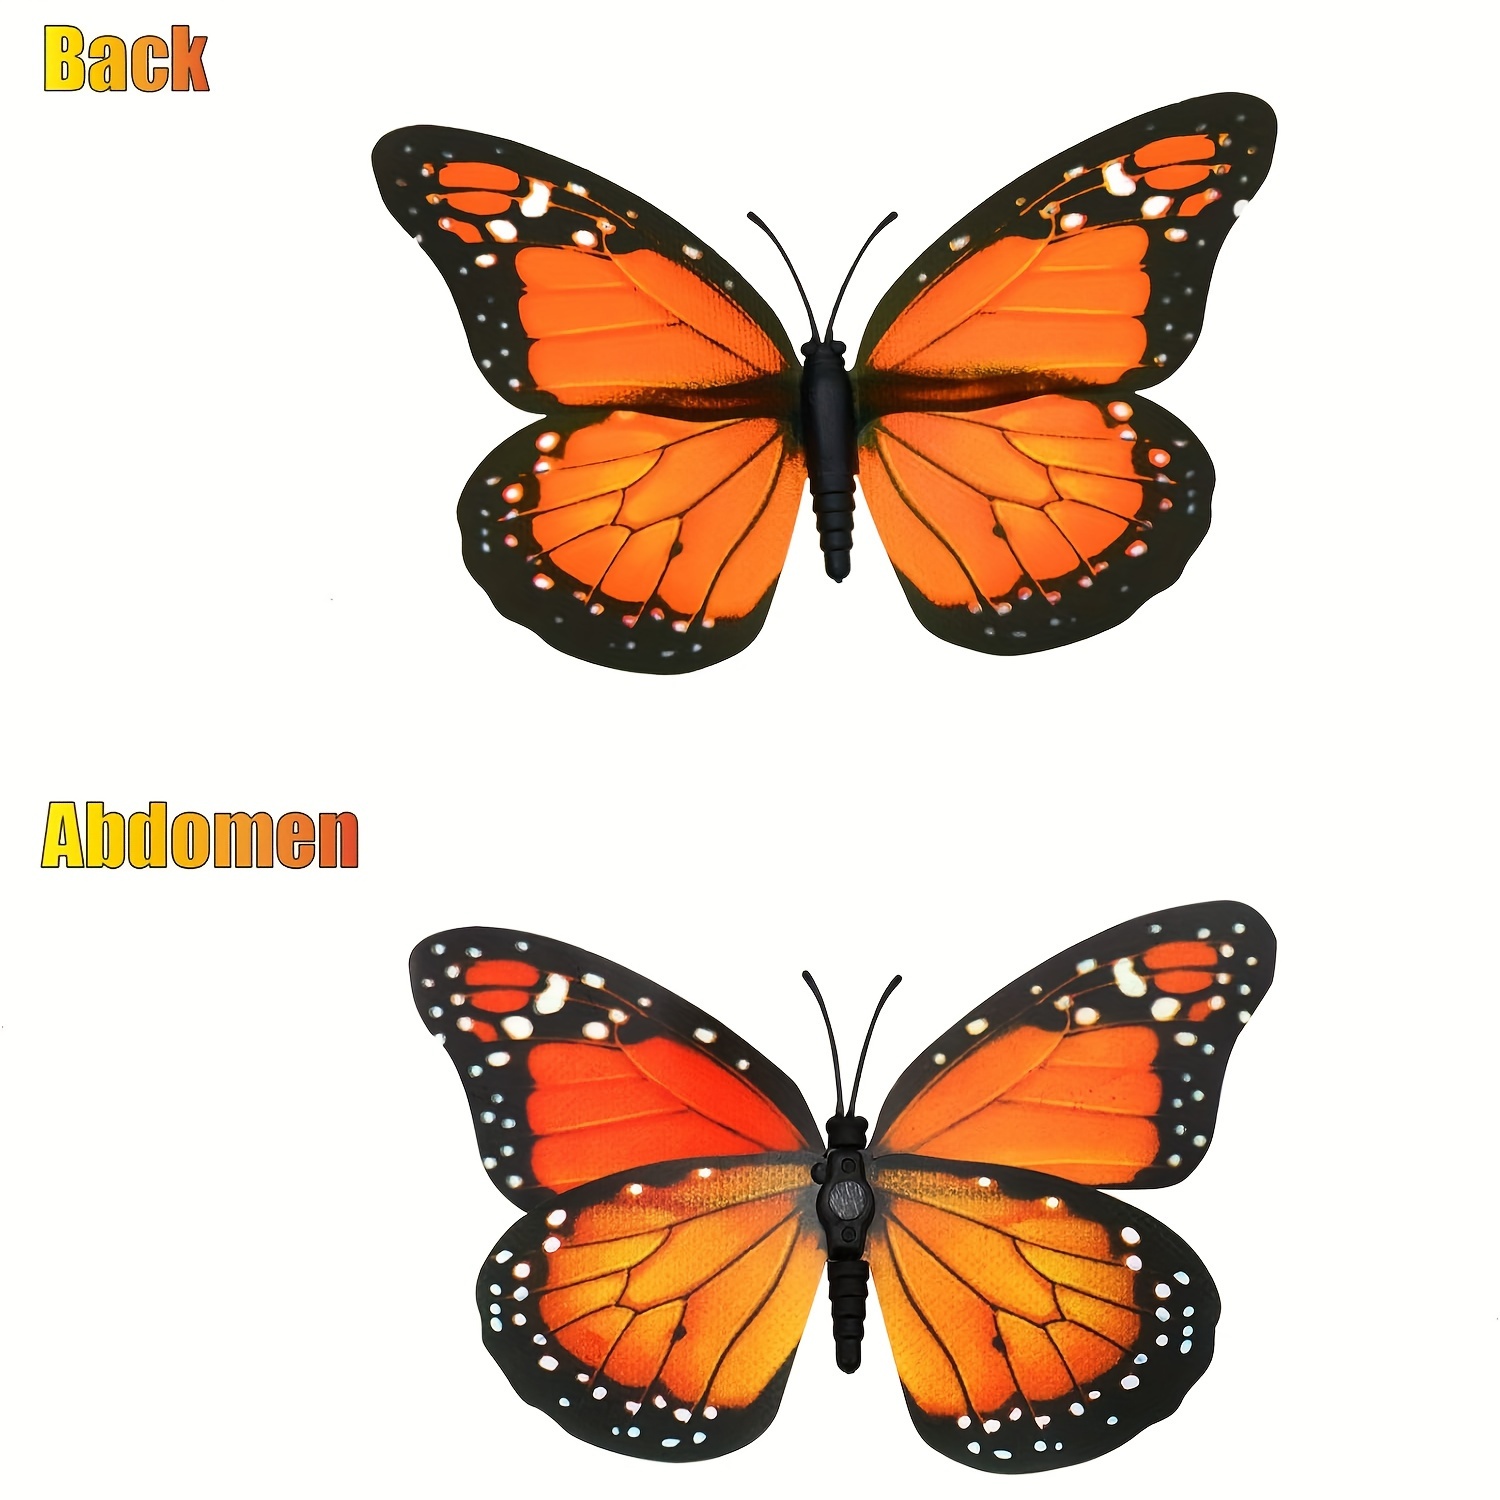 Butterfly Decorations Artificial Butterflies Decor - Temu